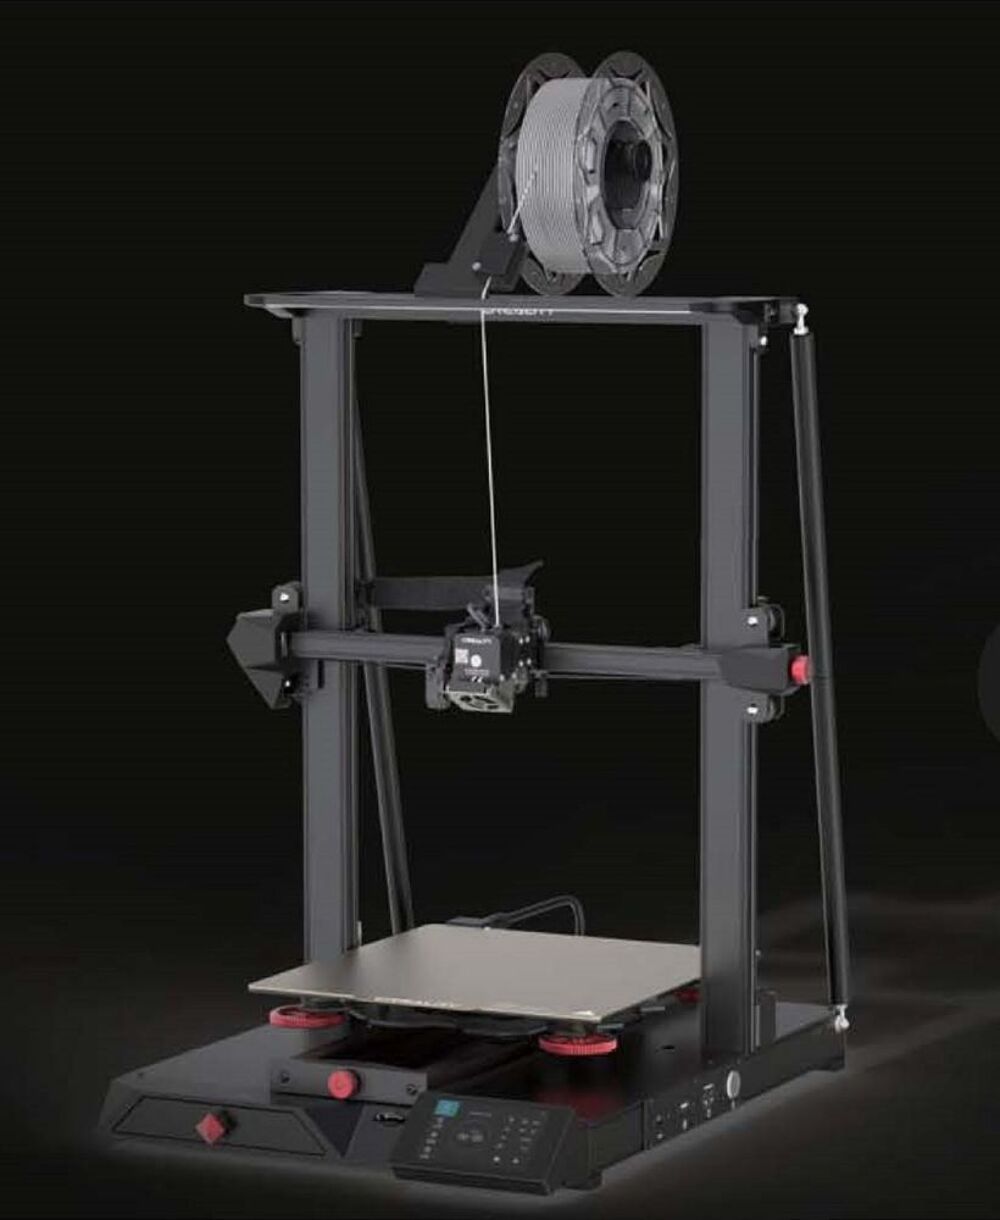 Imprimante 3D Creality CR-10 Smart Pro Matriel informatique